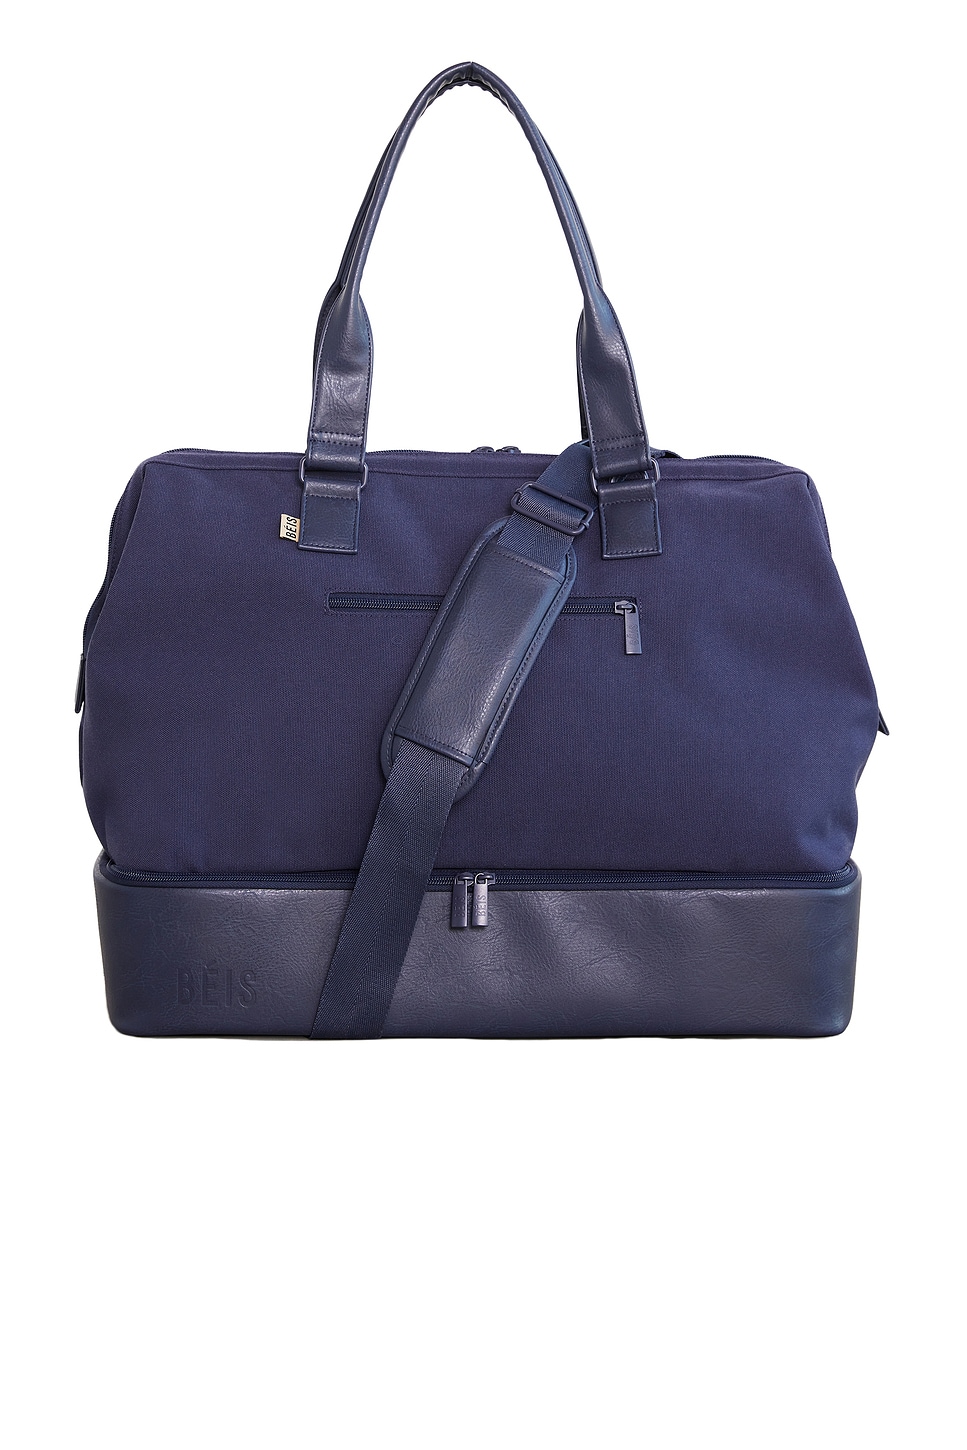 NWT BEIS Weekender bag in Navy Blue | Weekender bag, Weekender duffel bag,  Bags